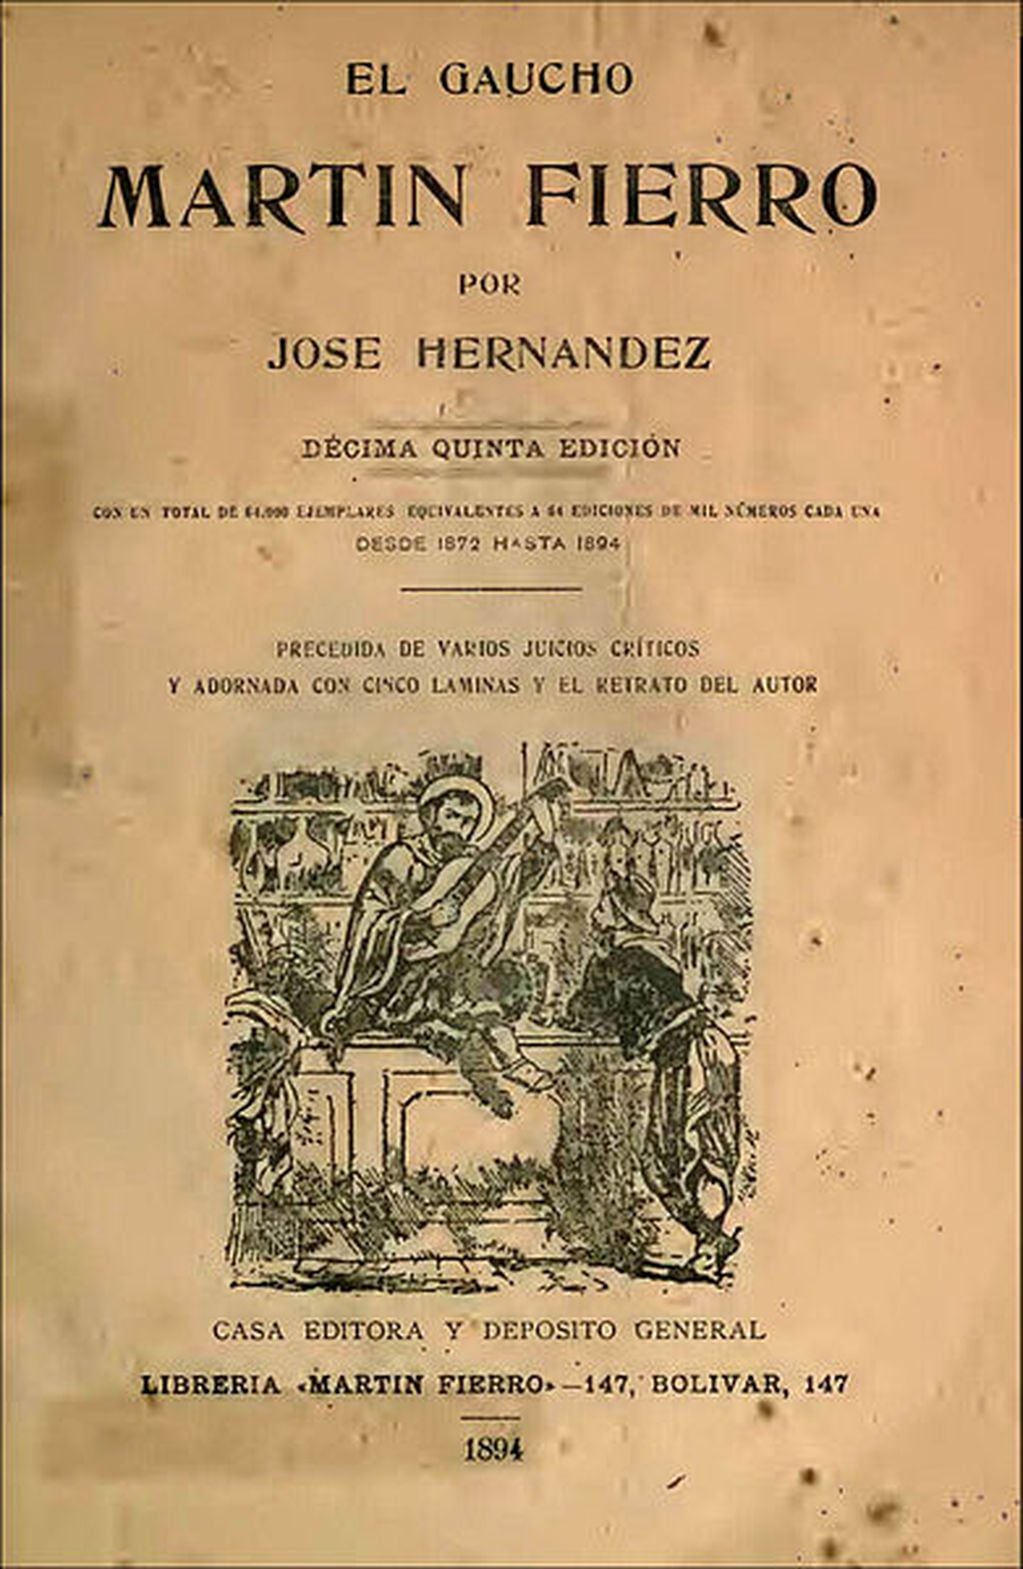 Ejemplar original de "La vuelta de Martín Fierro", 1897